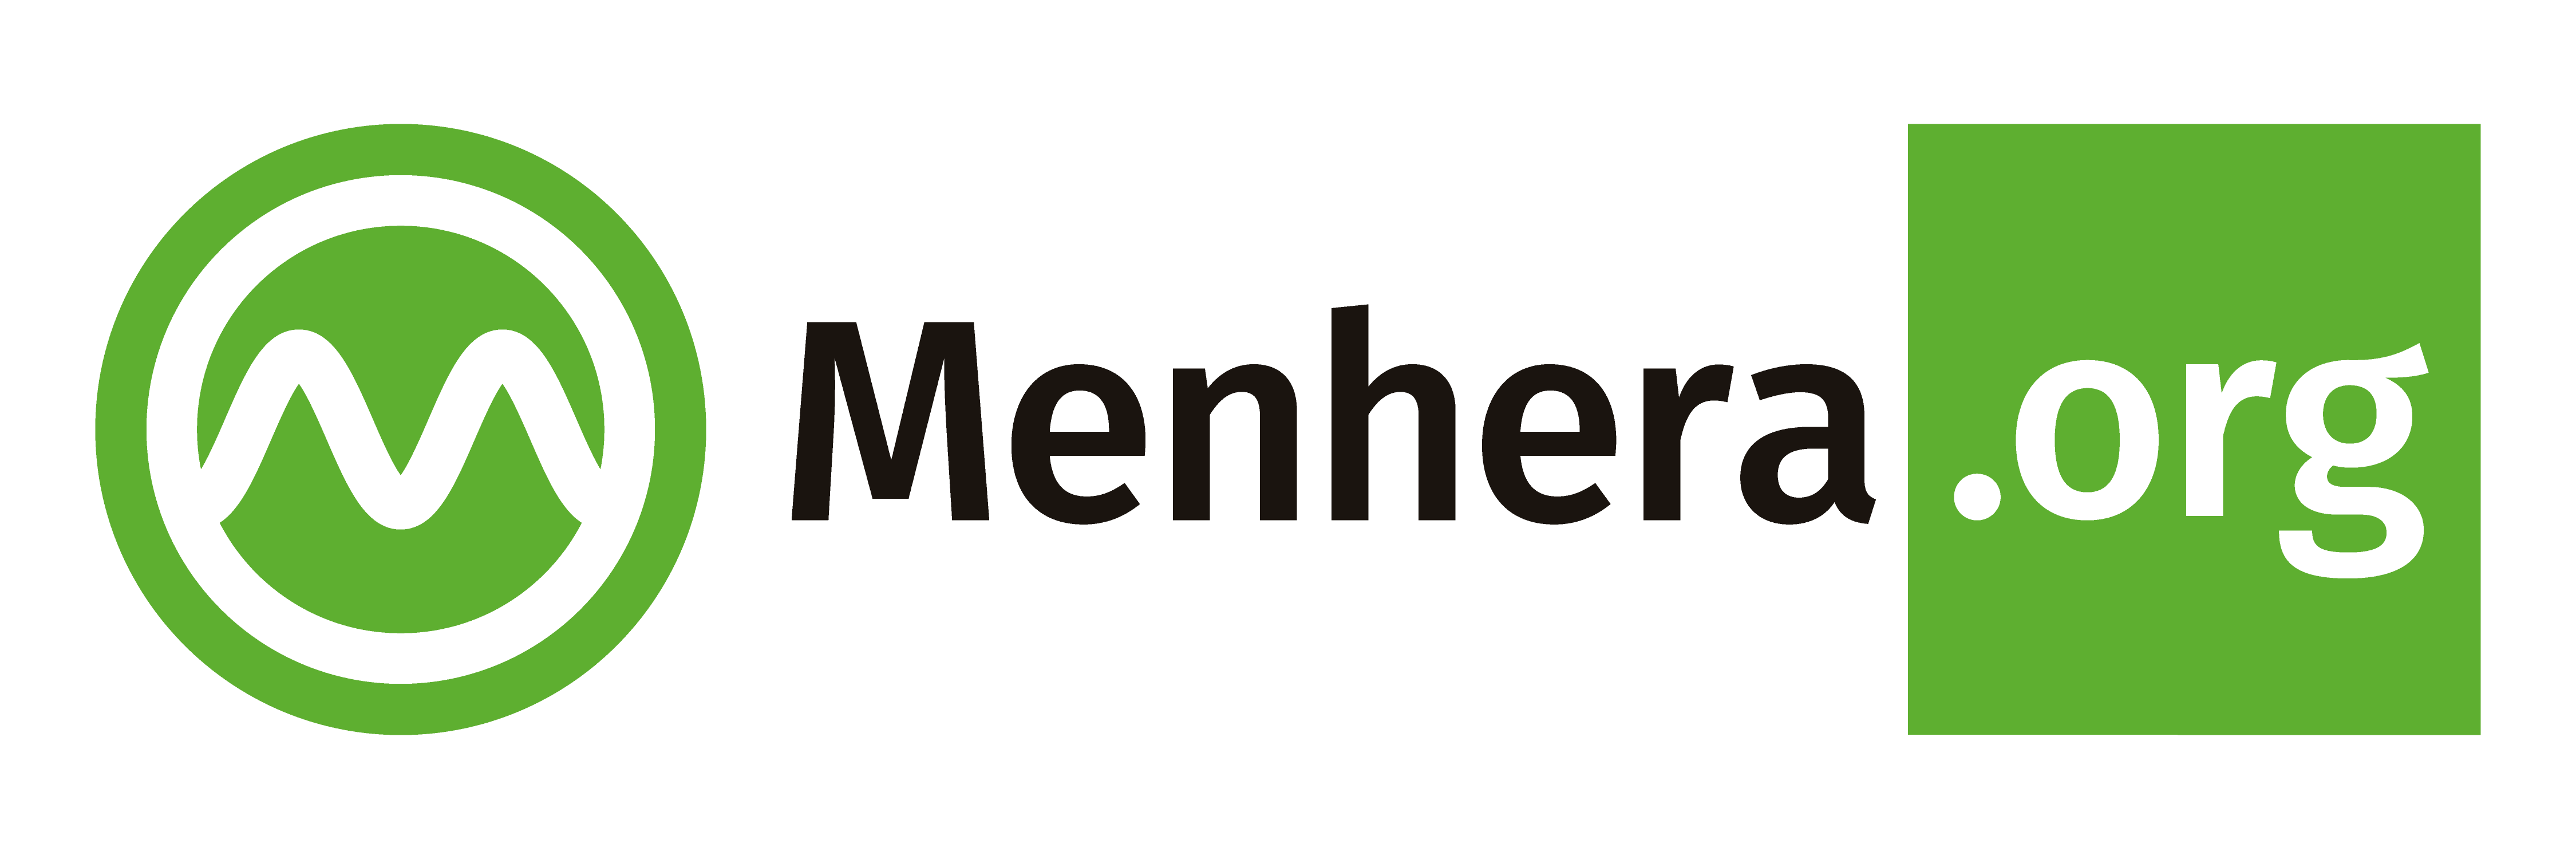 Menhera.org - Human-life Information Platforms Institute